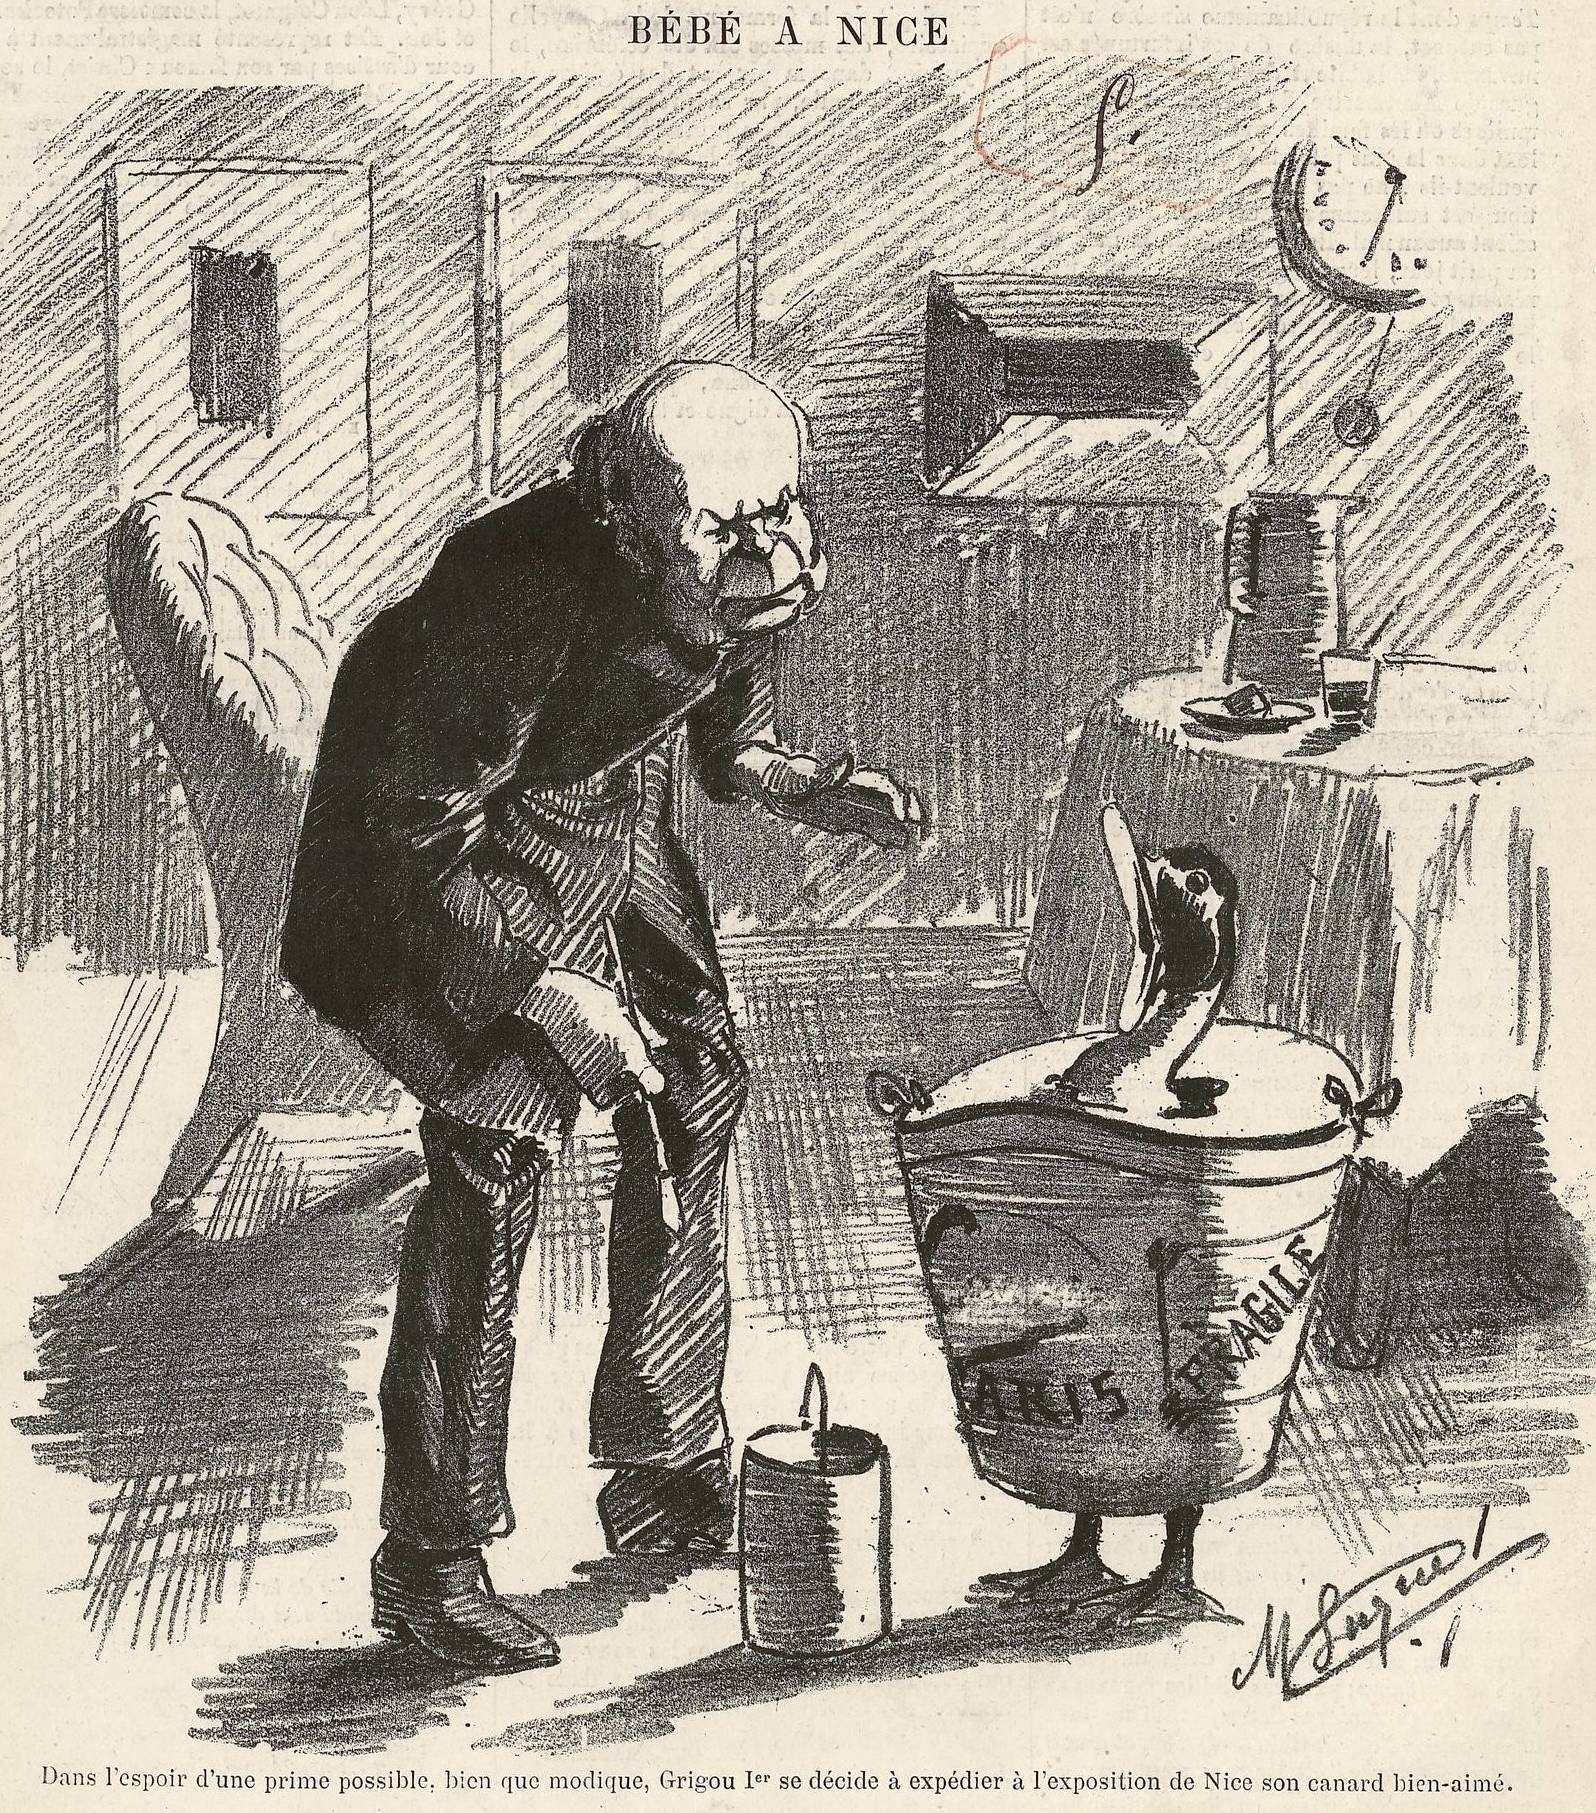 Jules Grévy et son canard Bébé, caricaturés par Manuel Luque, Le Monde Parisien, 1884